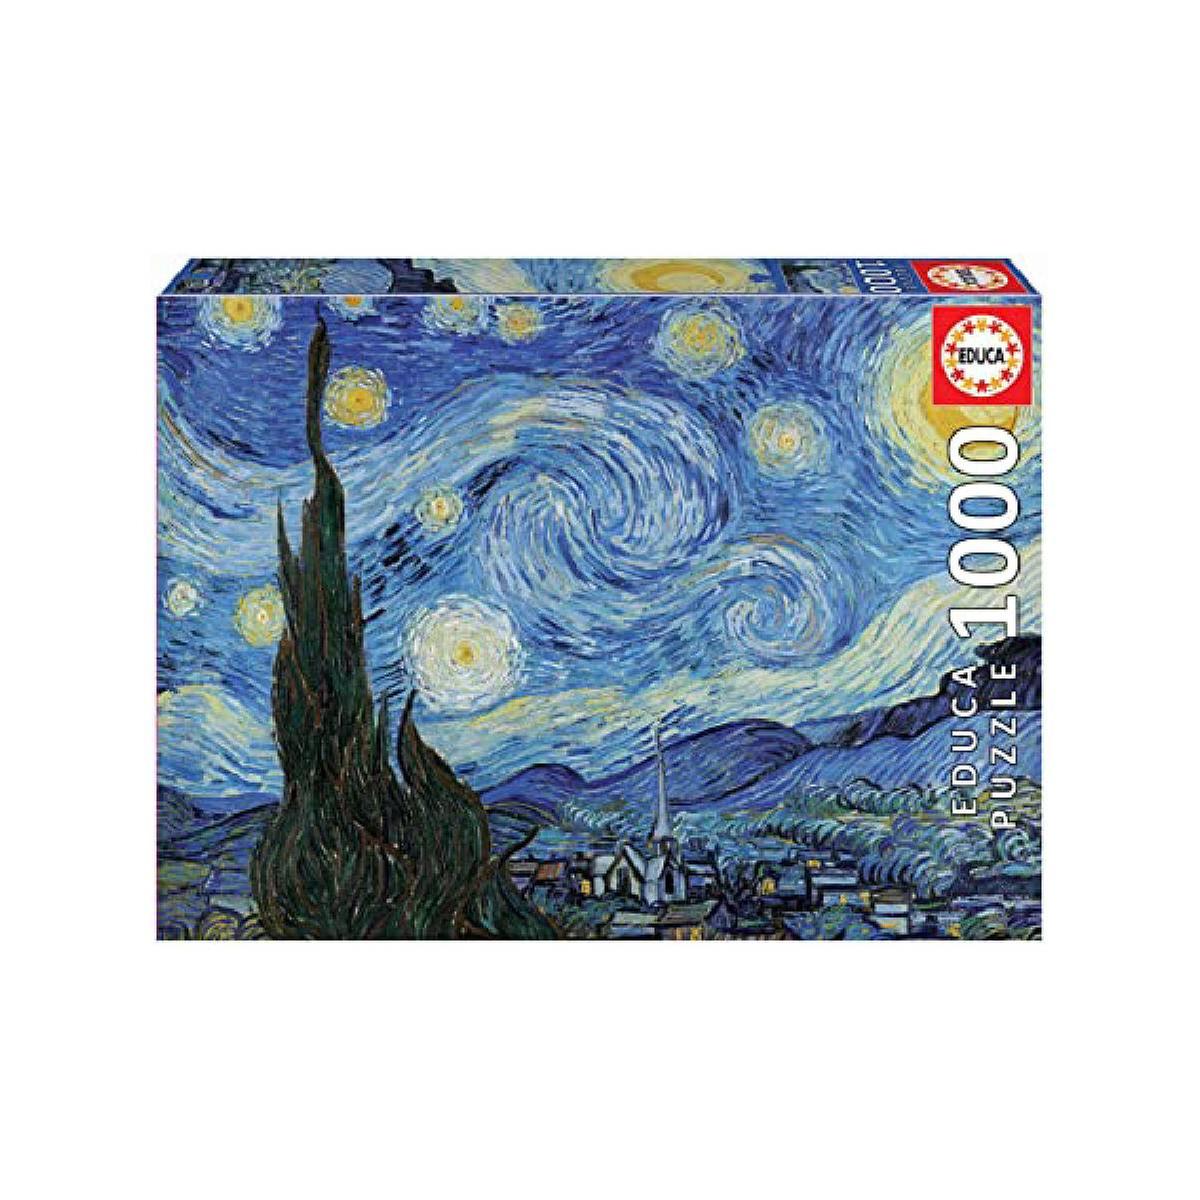 Educa Borrás - La noche estrellada, Vincent Van Gogh - Puzzle 1000 piezas, Selección especial día del Padre